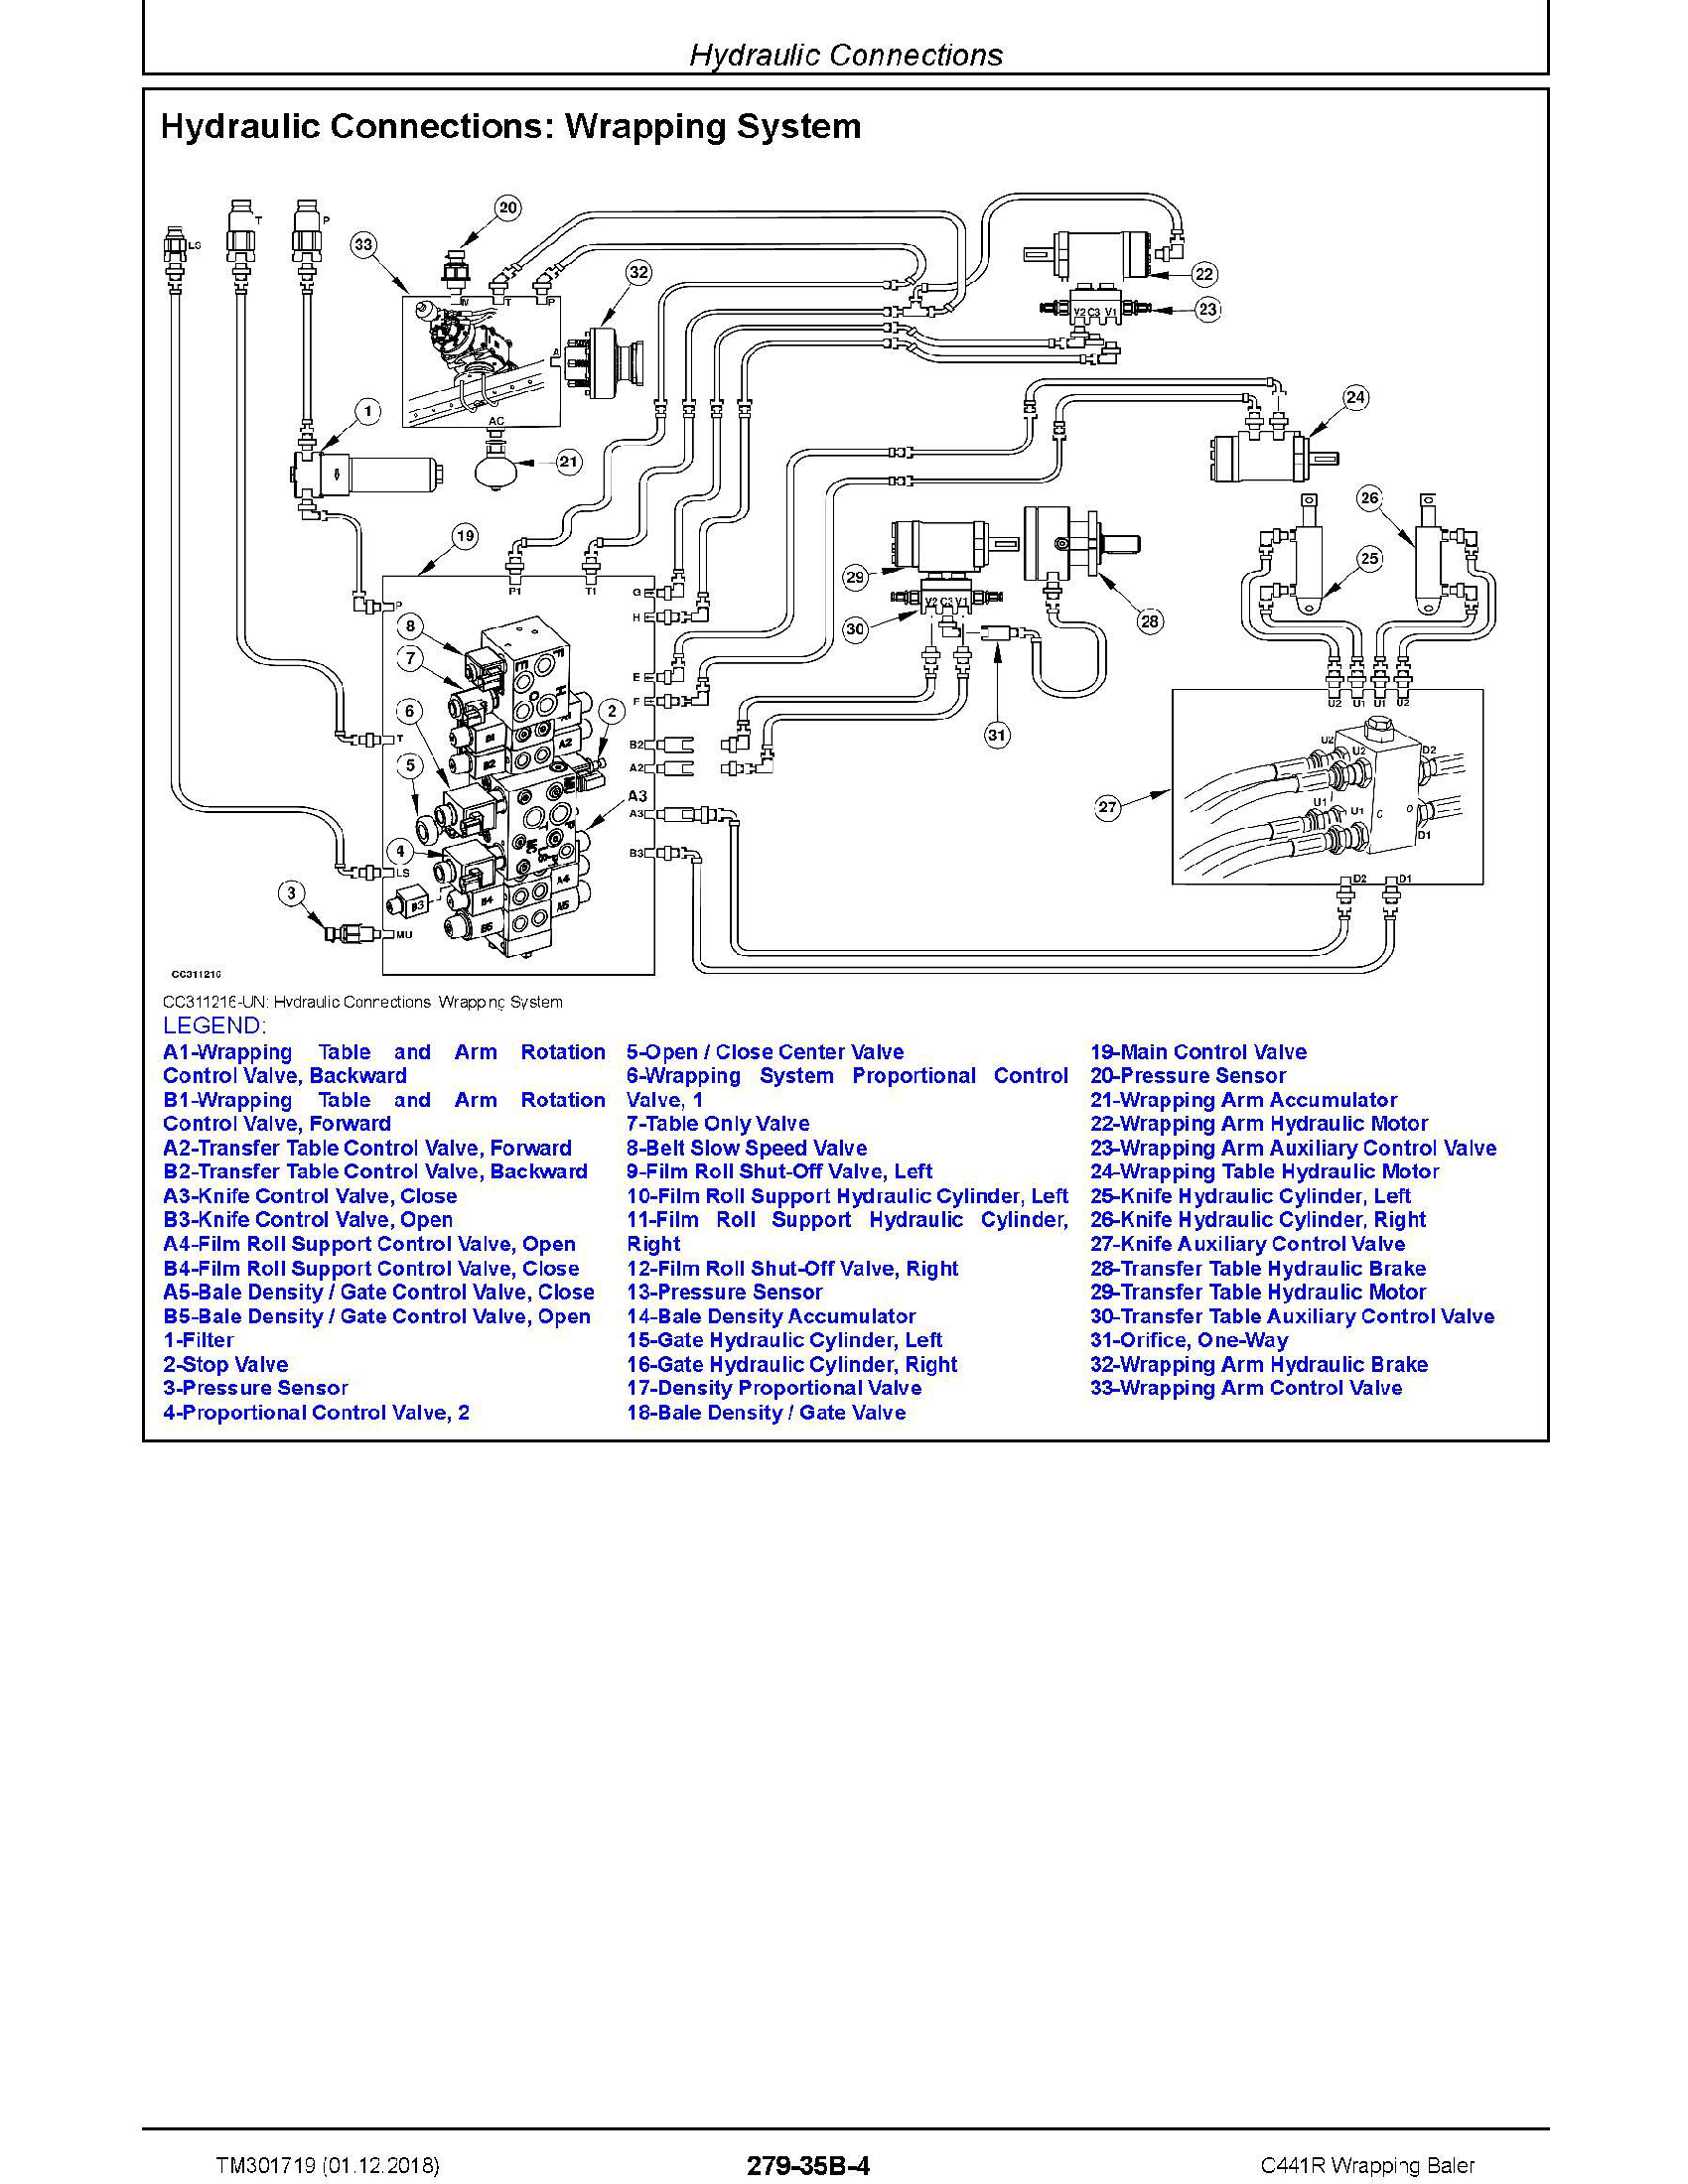 John Deere 26G manual pdf